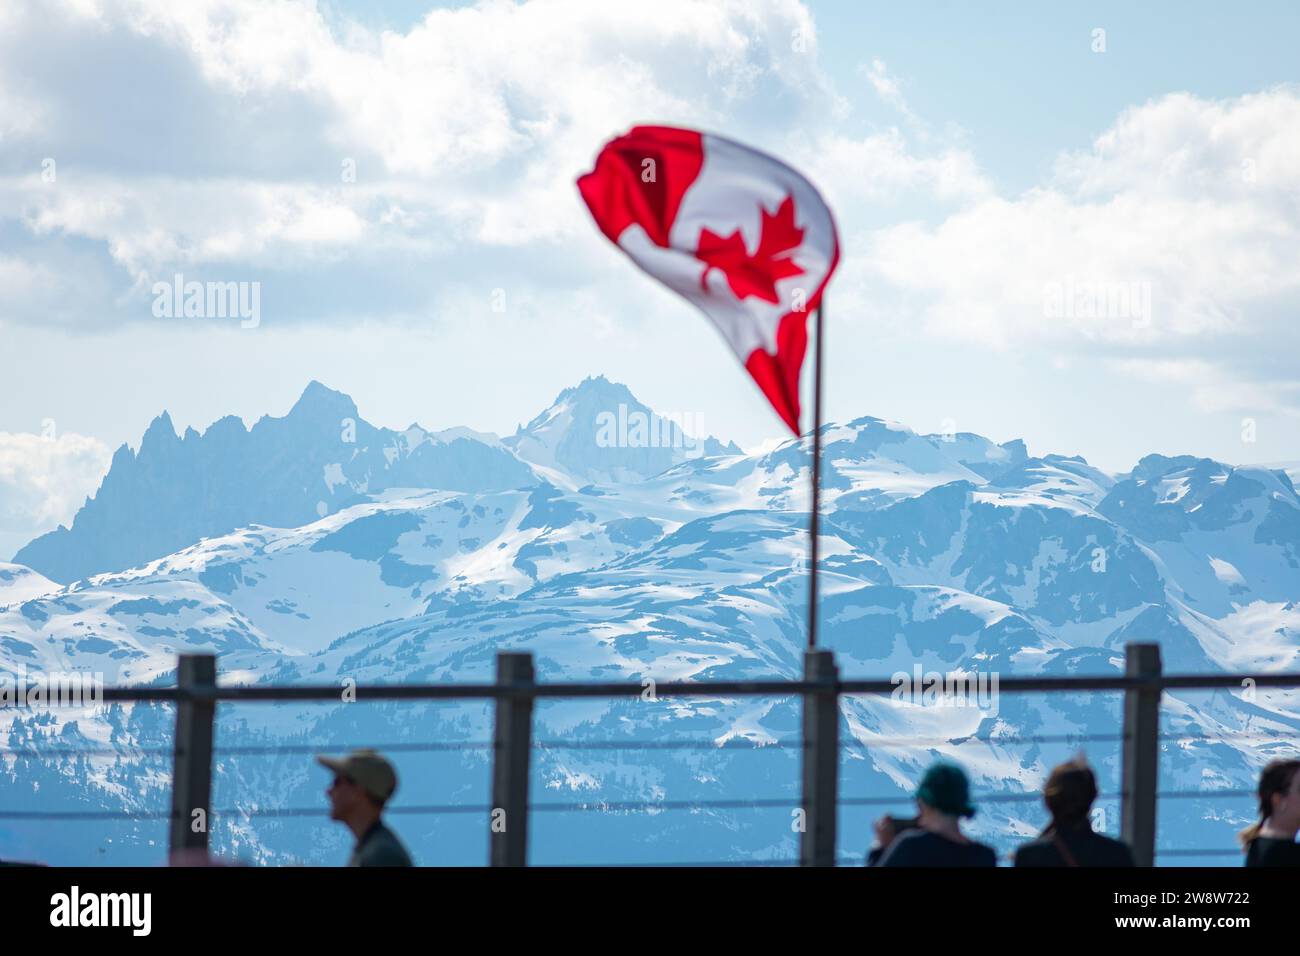 La bandiera canadese sventola con orgoglio sullo sfondo delle cime innevate del monte Whistler, a simboleggiare lo spirito di avventura nella Columbia Britannica. Foto Stock